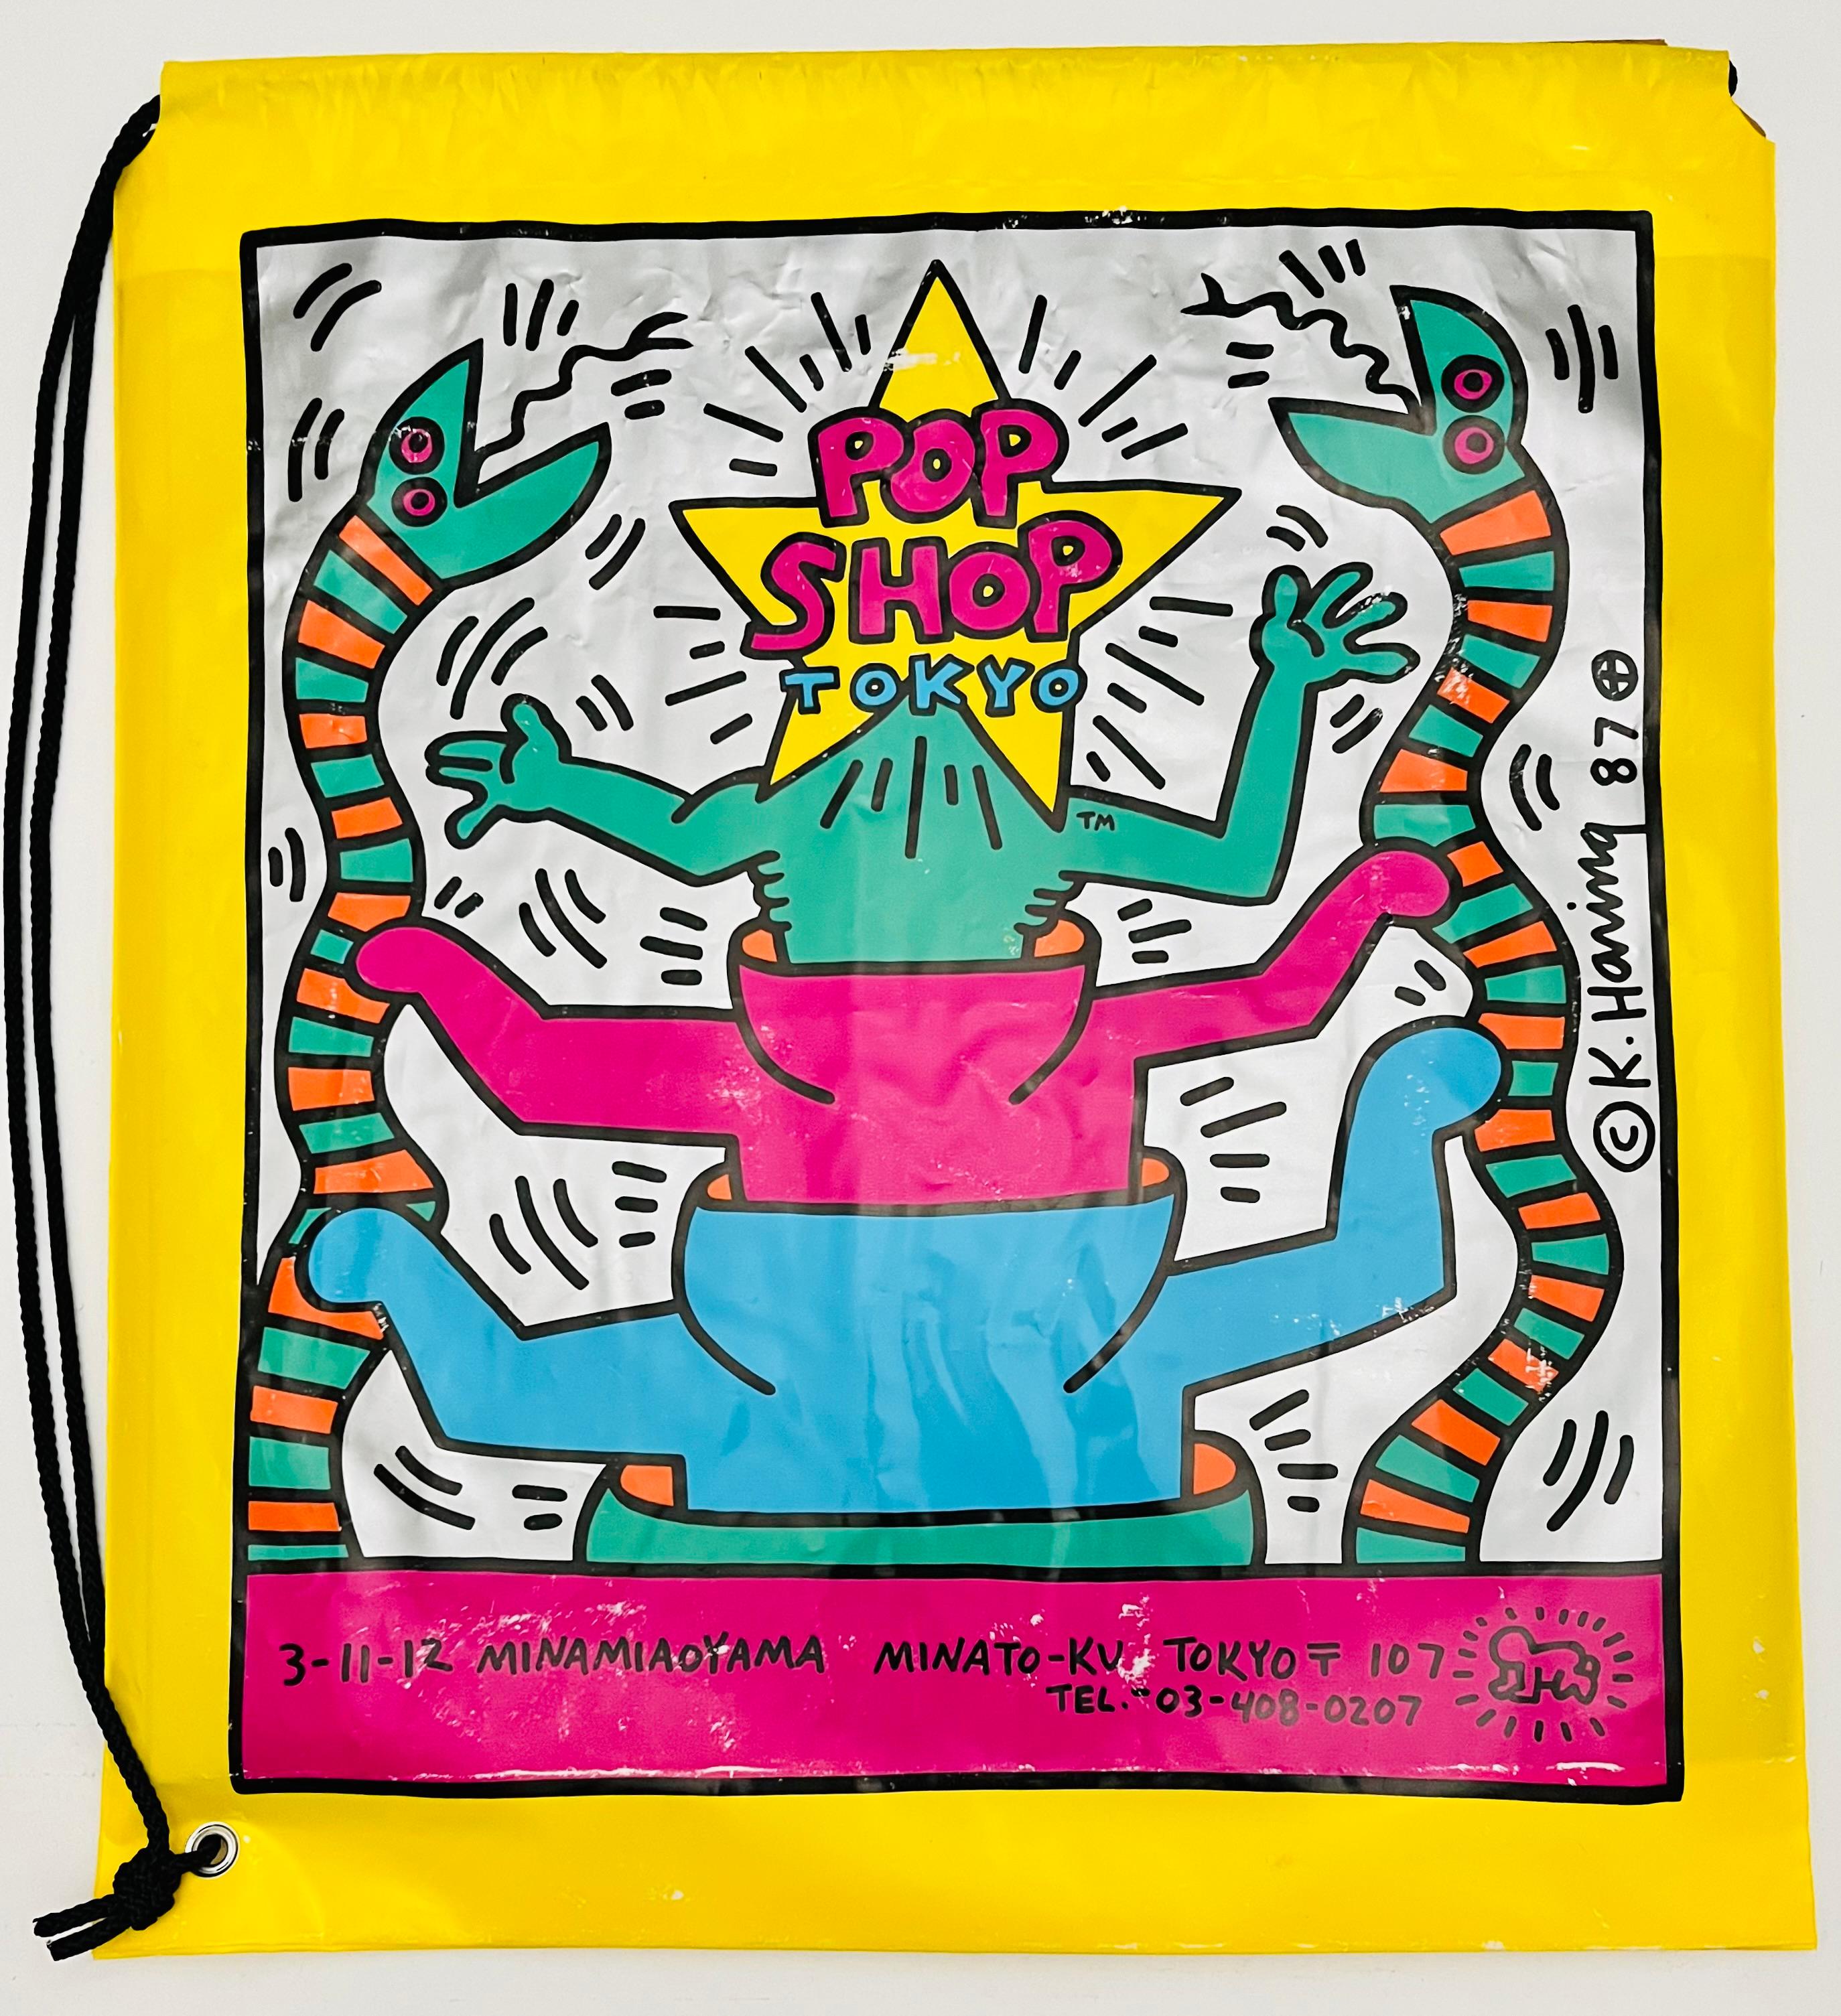 Keith Haring Pop Shop Tokyo 1988 :
Rare sac original des années 1980 de Keith Haring Pop Shop Tokyo, conçu et illustré par l'artiste. La signature imprimée de Keith Haring et les logos originaux de Haring Pop shop Tokyo, ainsi que les couleurs vives